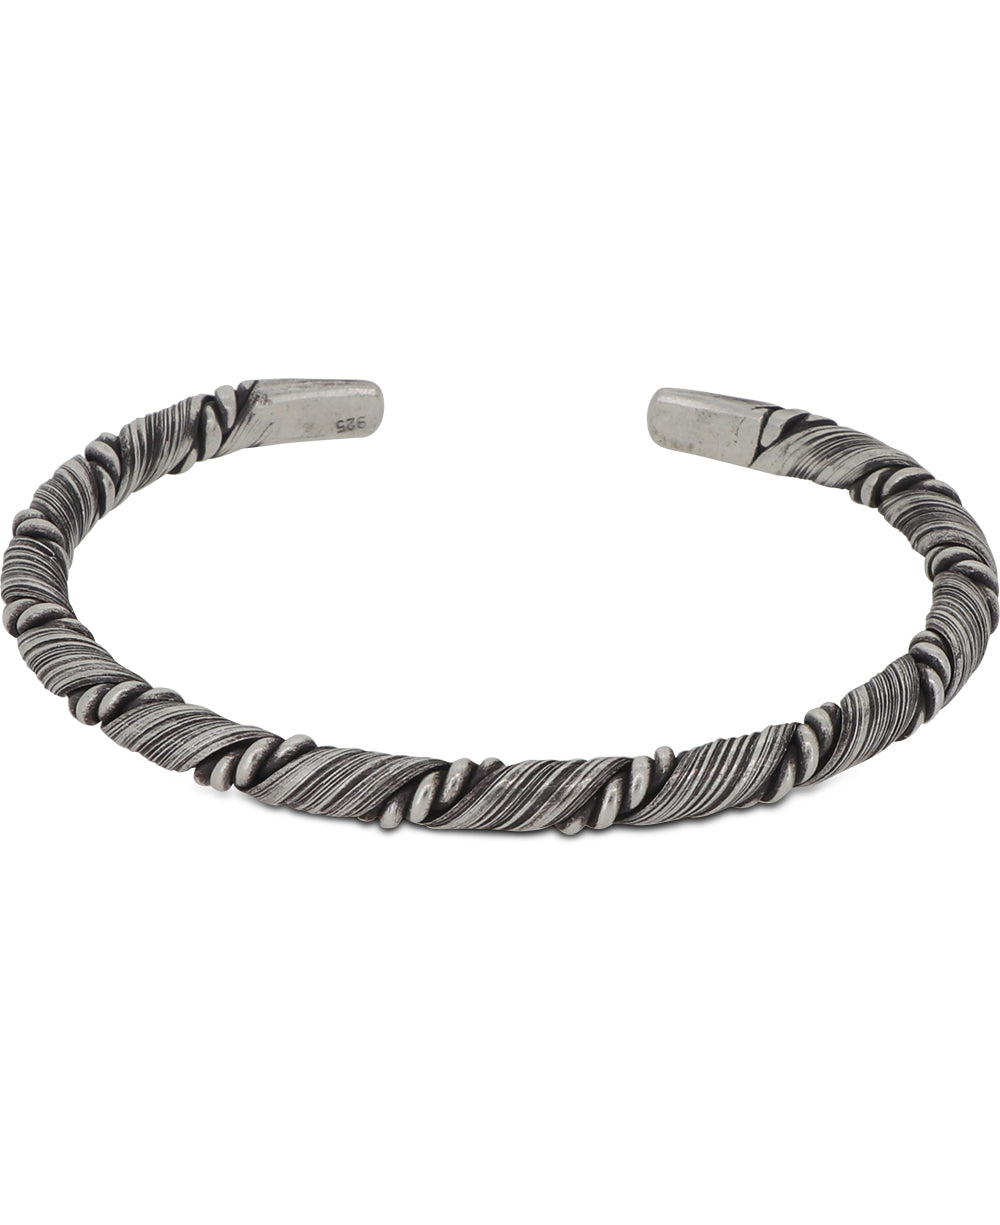 Hilltribe Silver bracelet